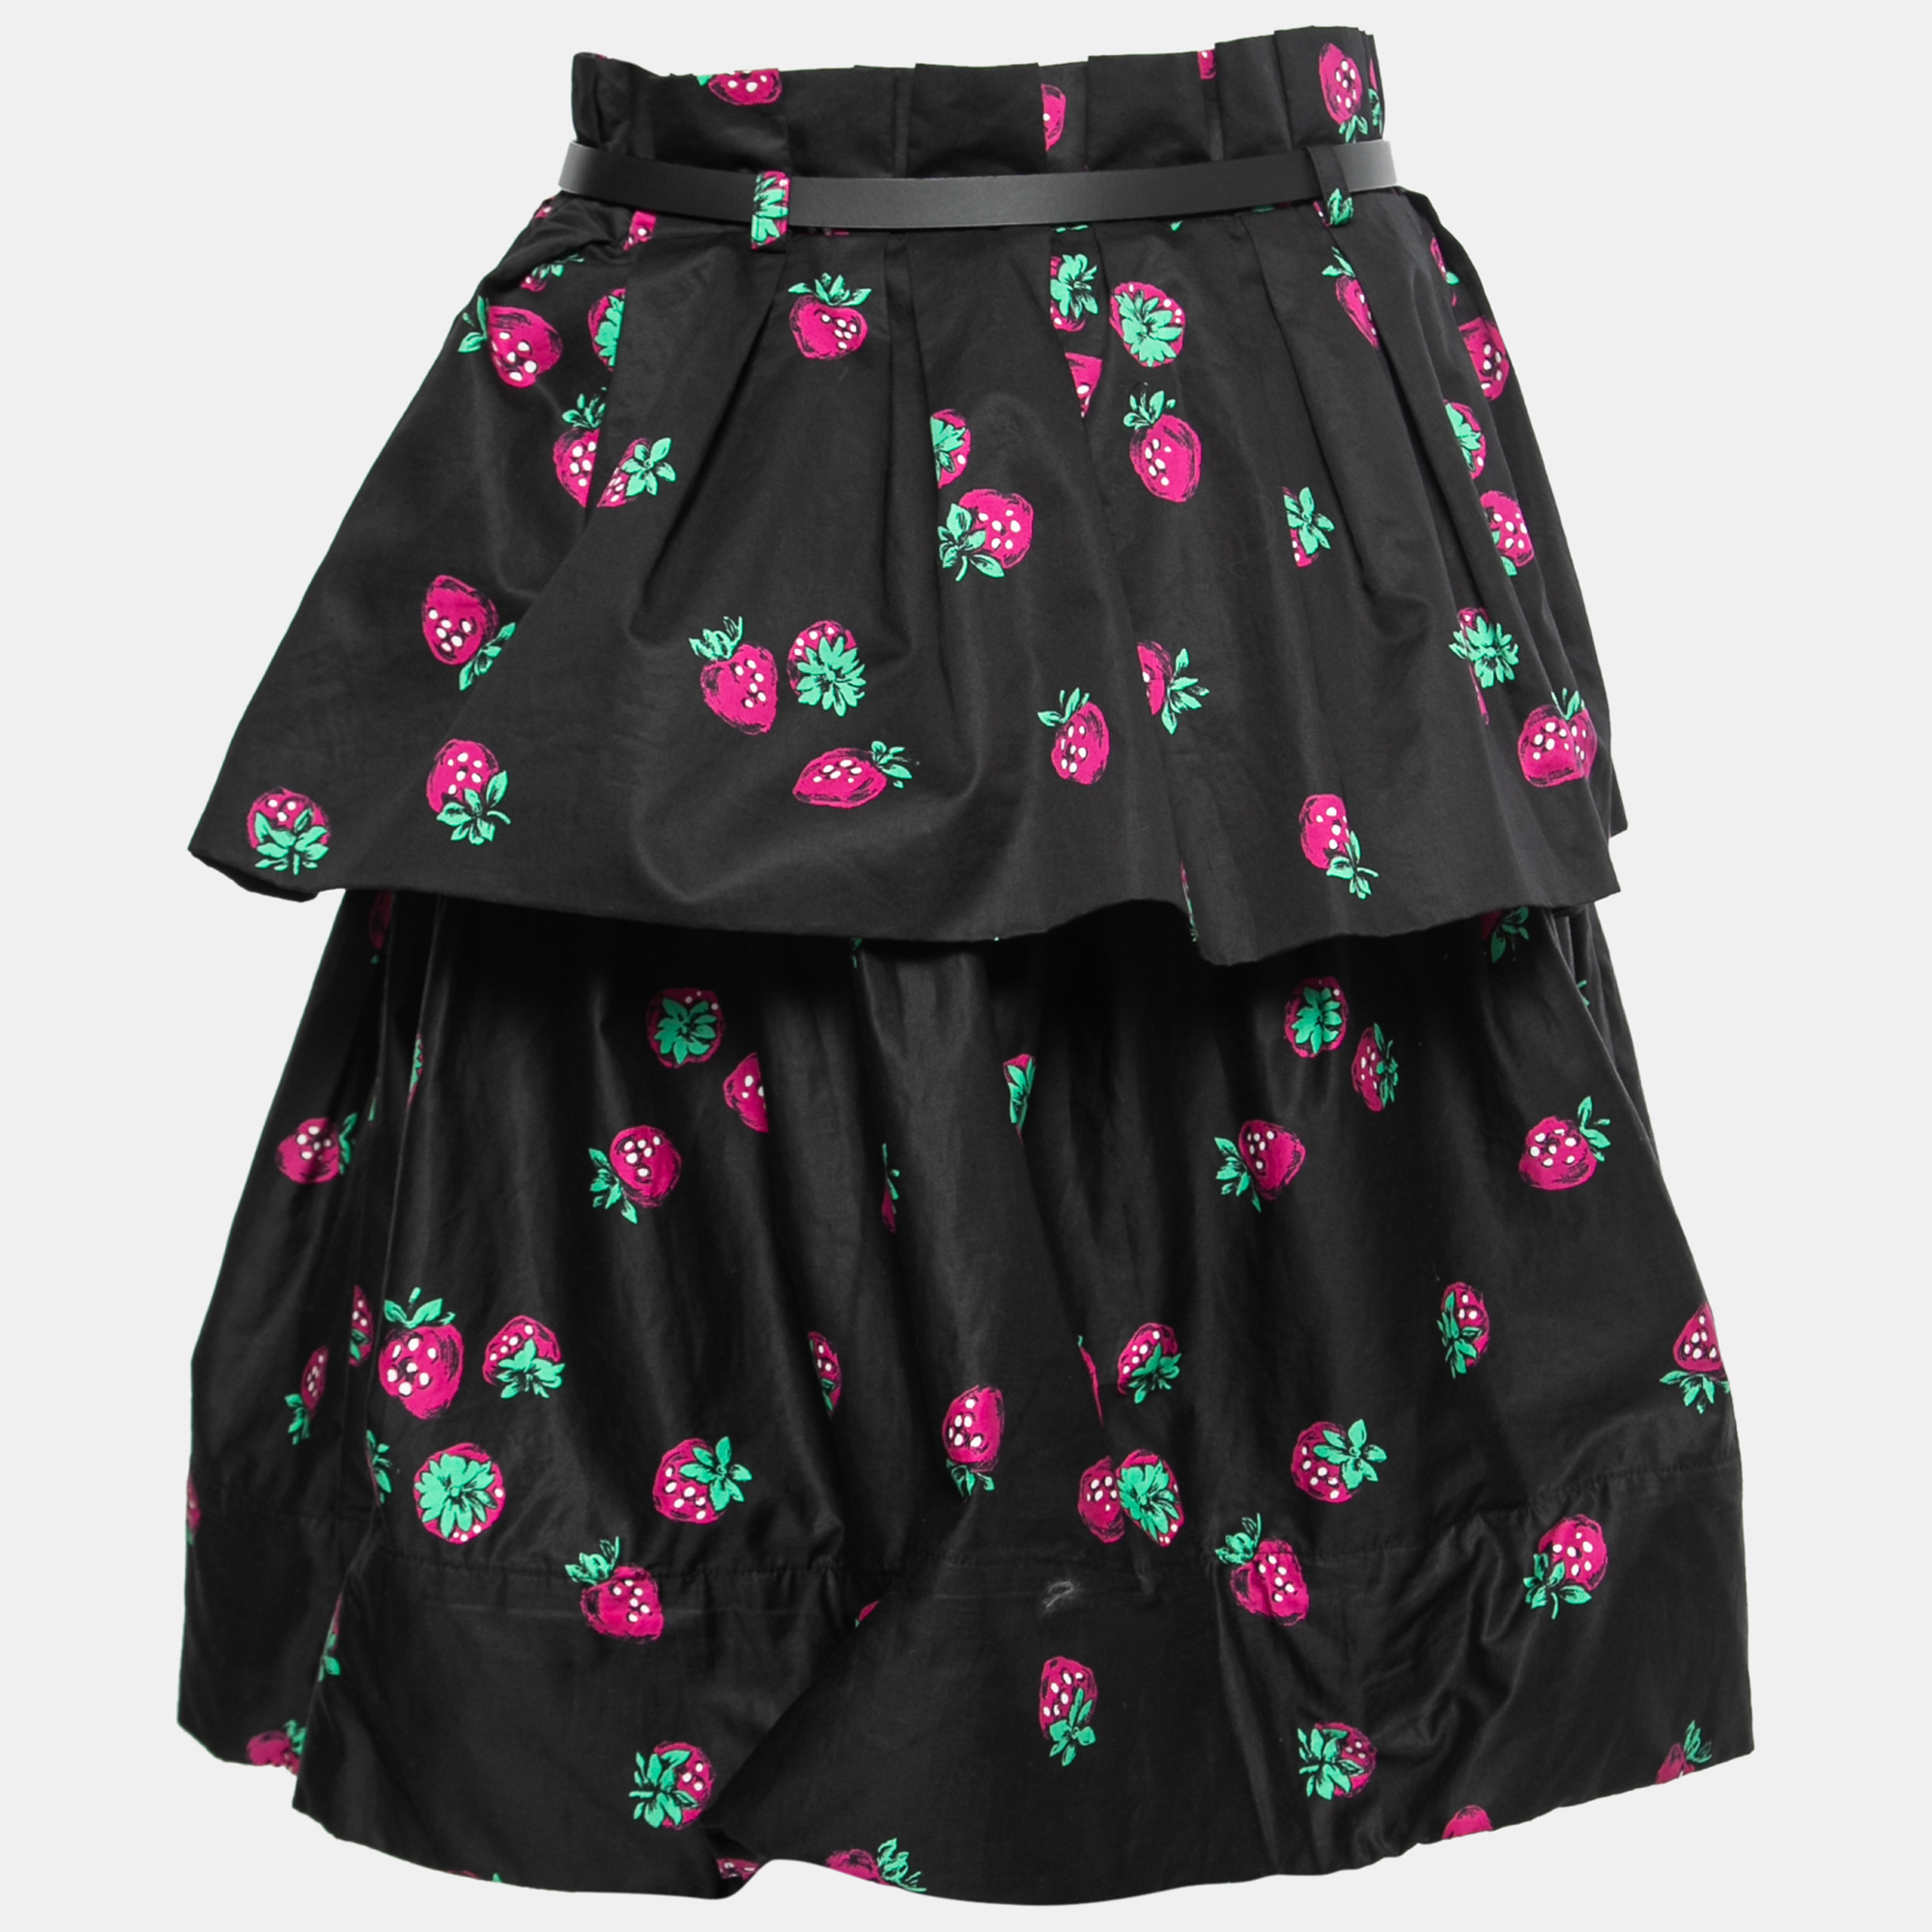 

Moschino Cheap and Chic Black Printed Cotton Ruffled Mini Skirt